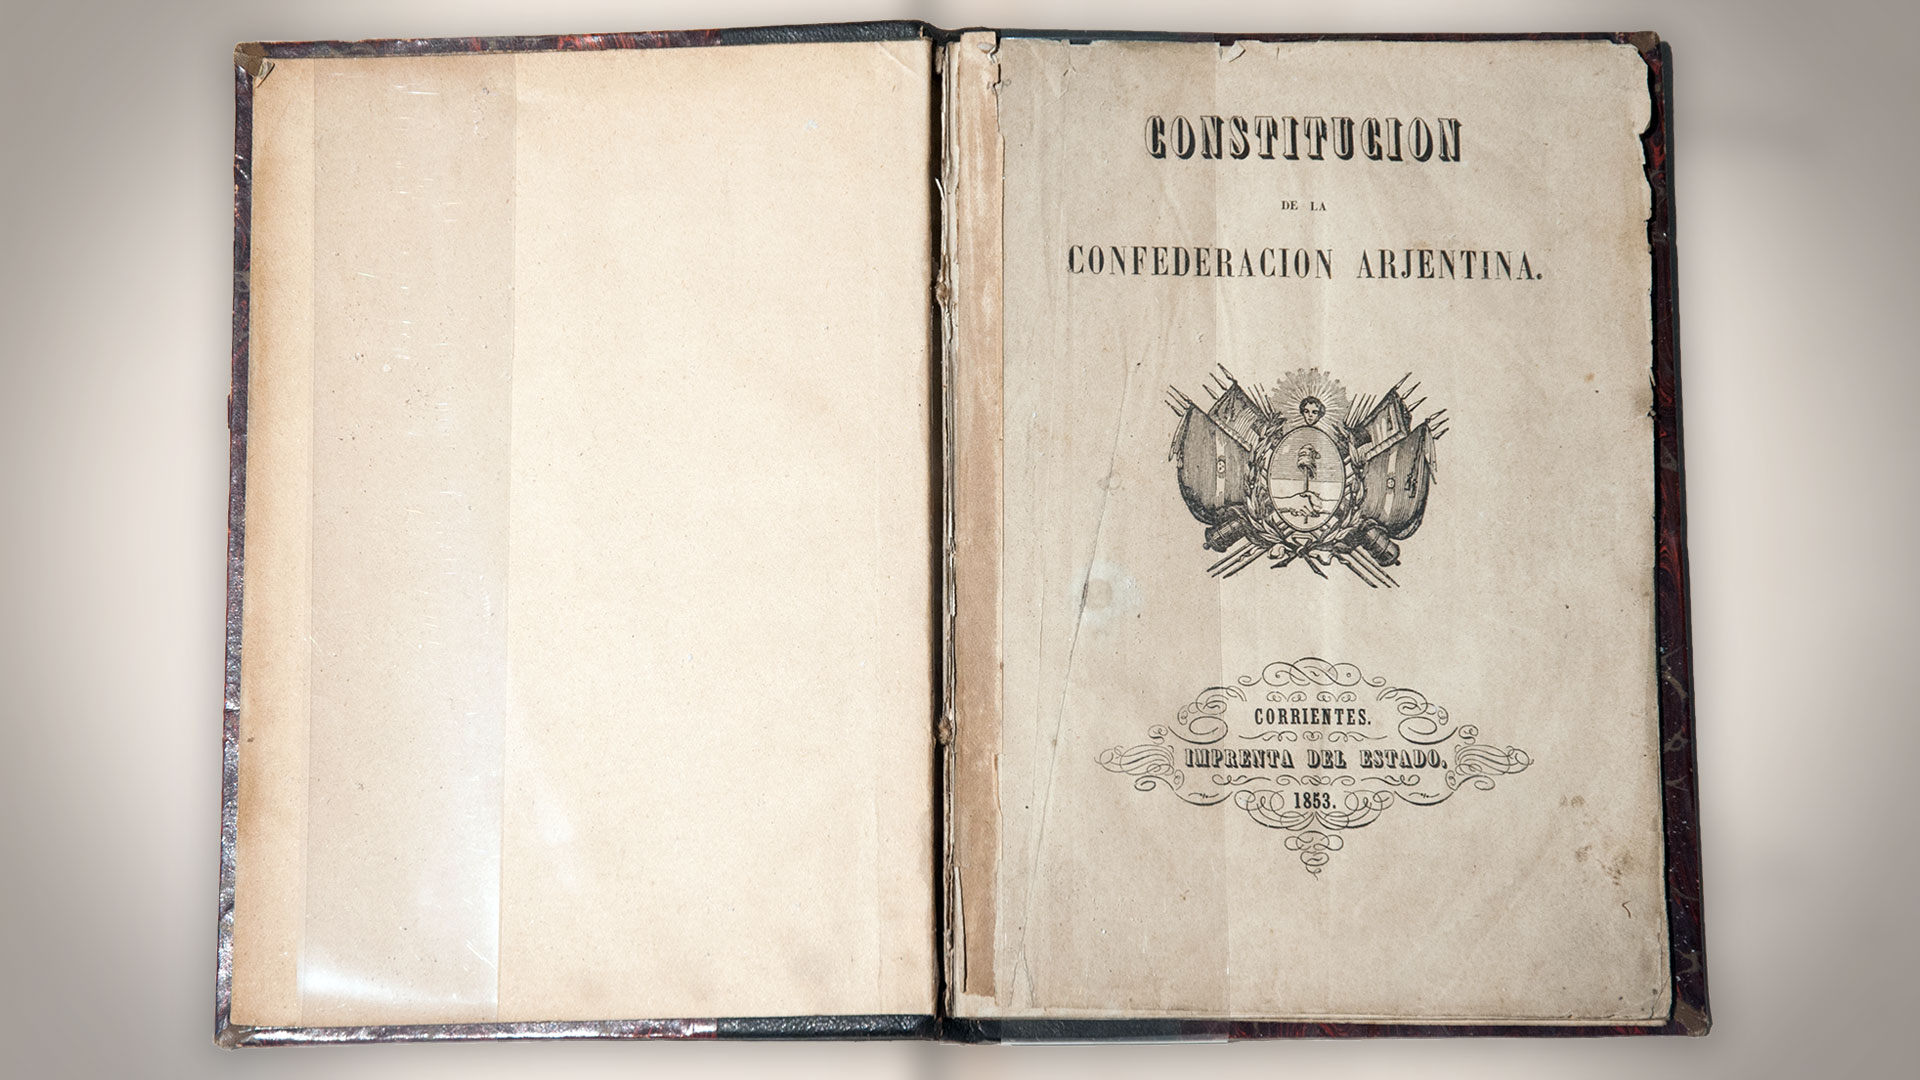 La Constitución Nacional de 1853